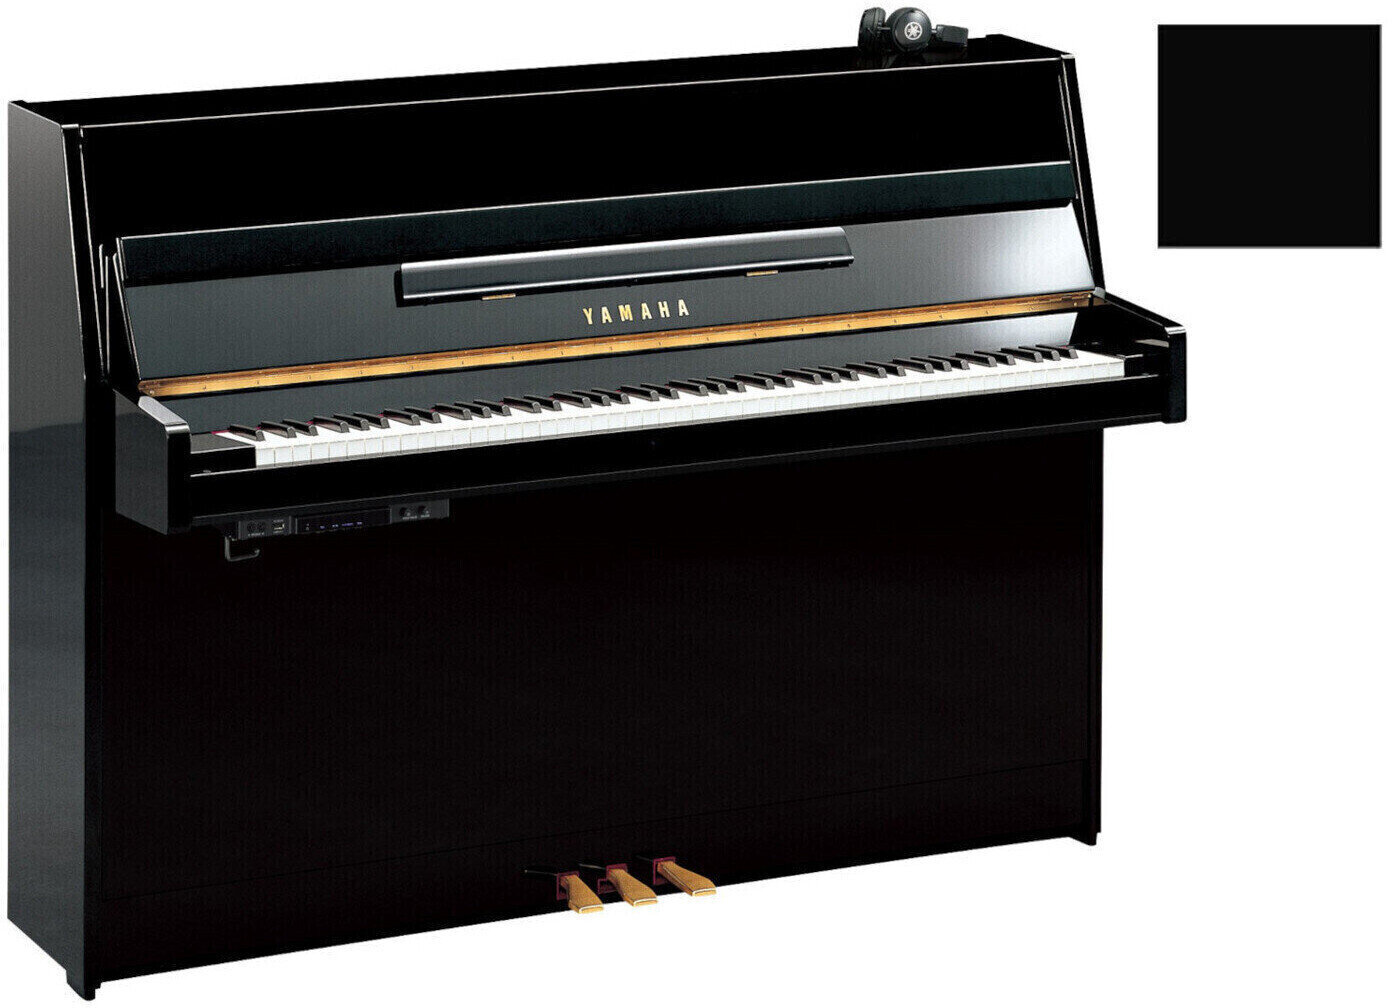 Ακουστικό Πιάνο, Πιανίνο Yamaha B1 SC2 Silent Piano Polished Ebony with Chrome